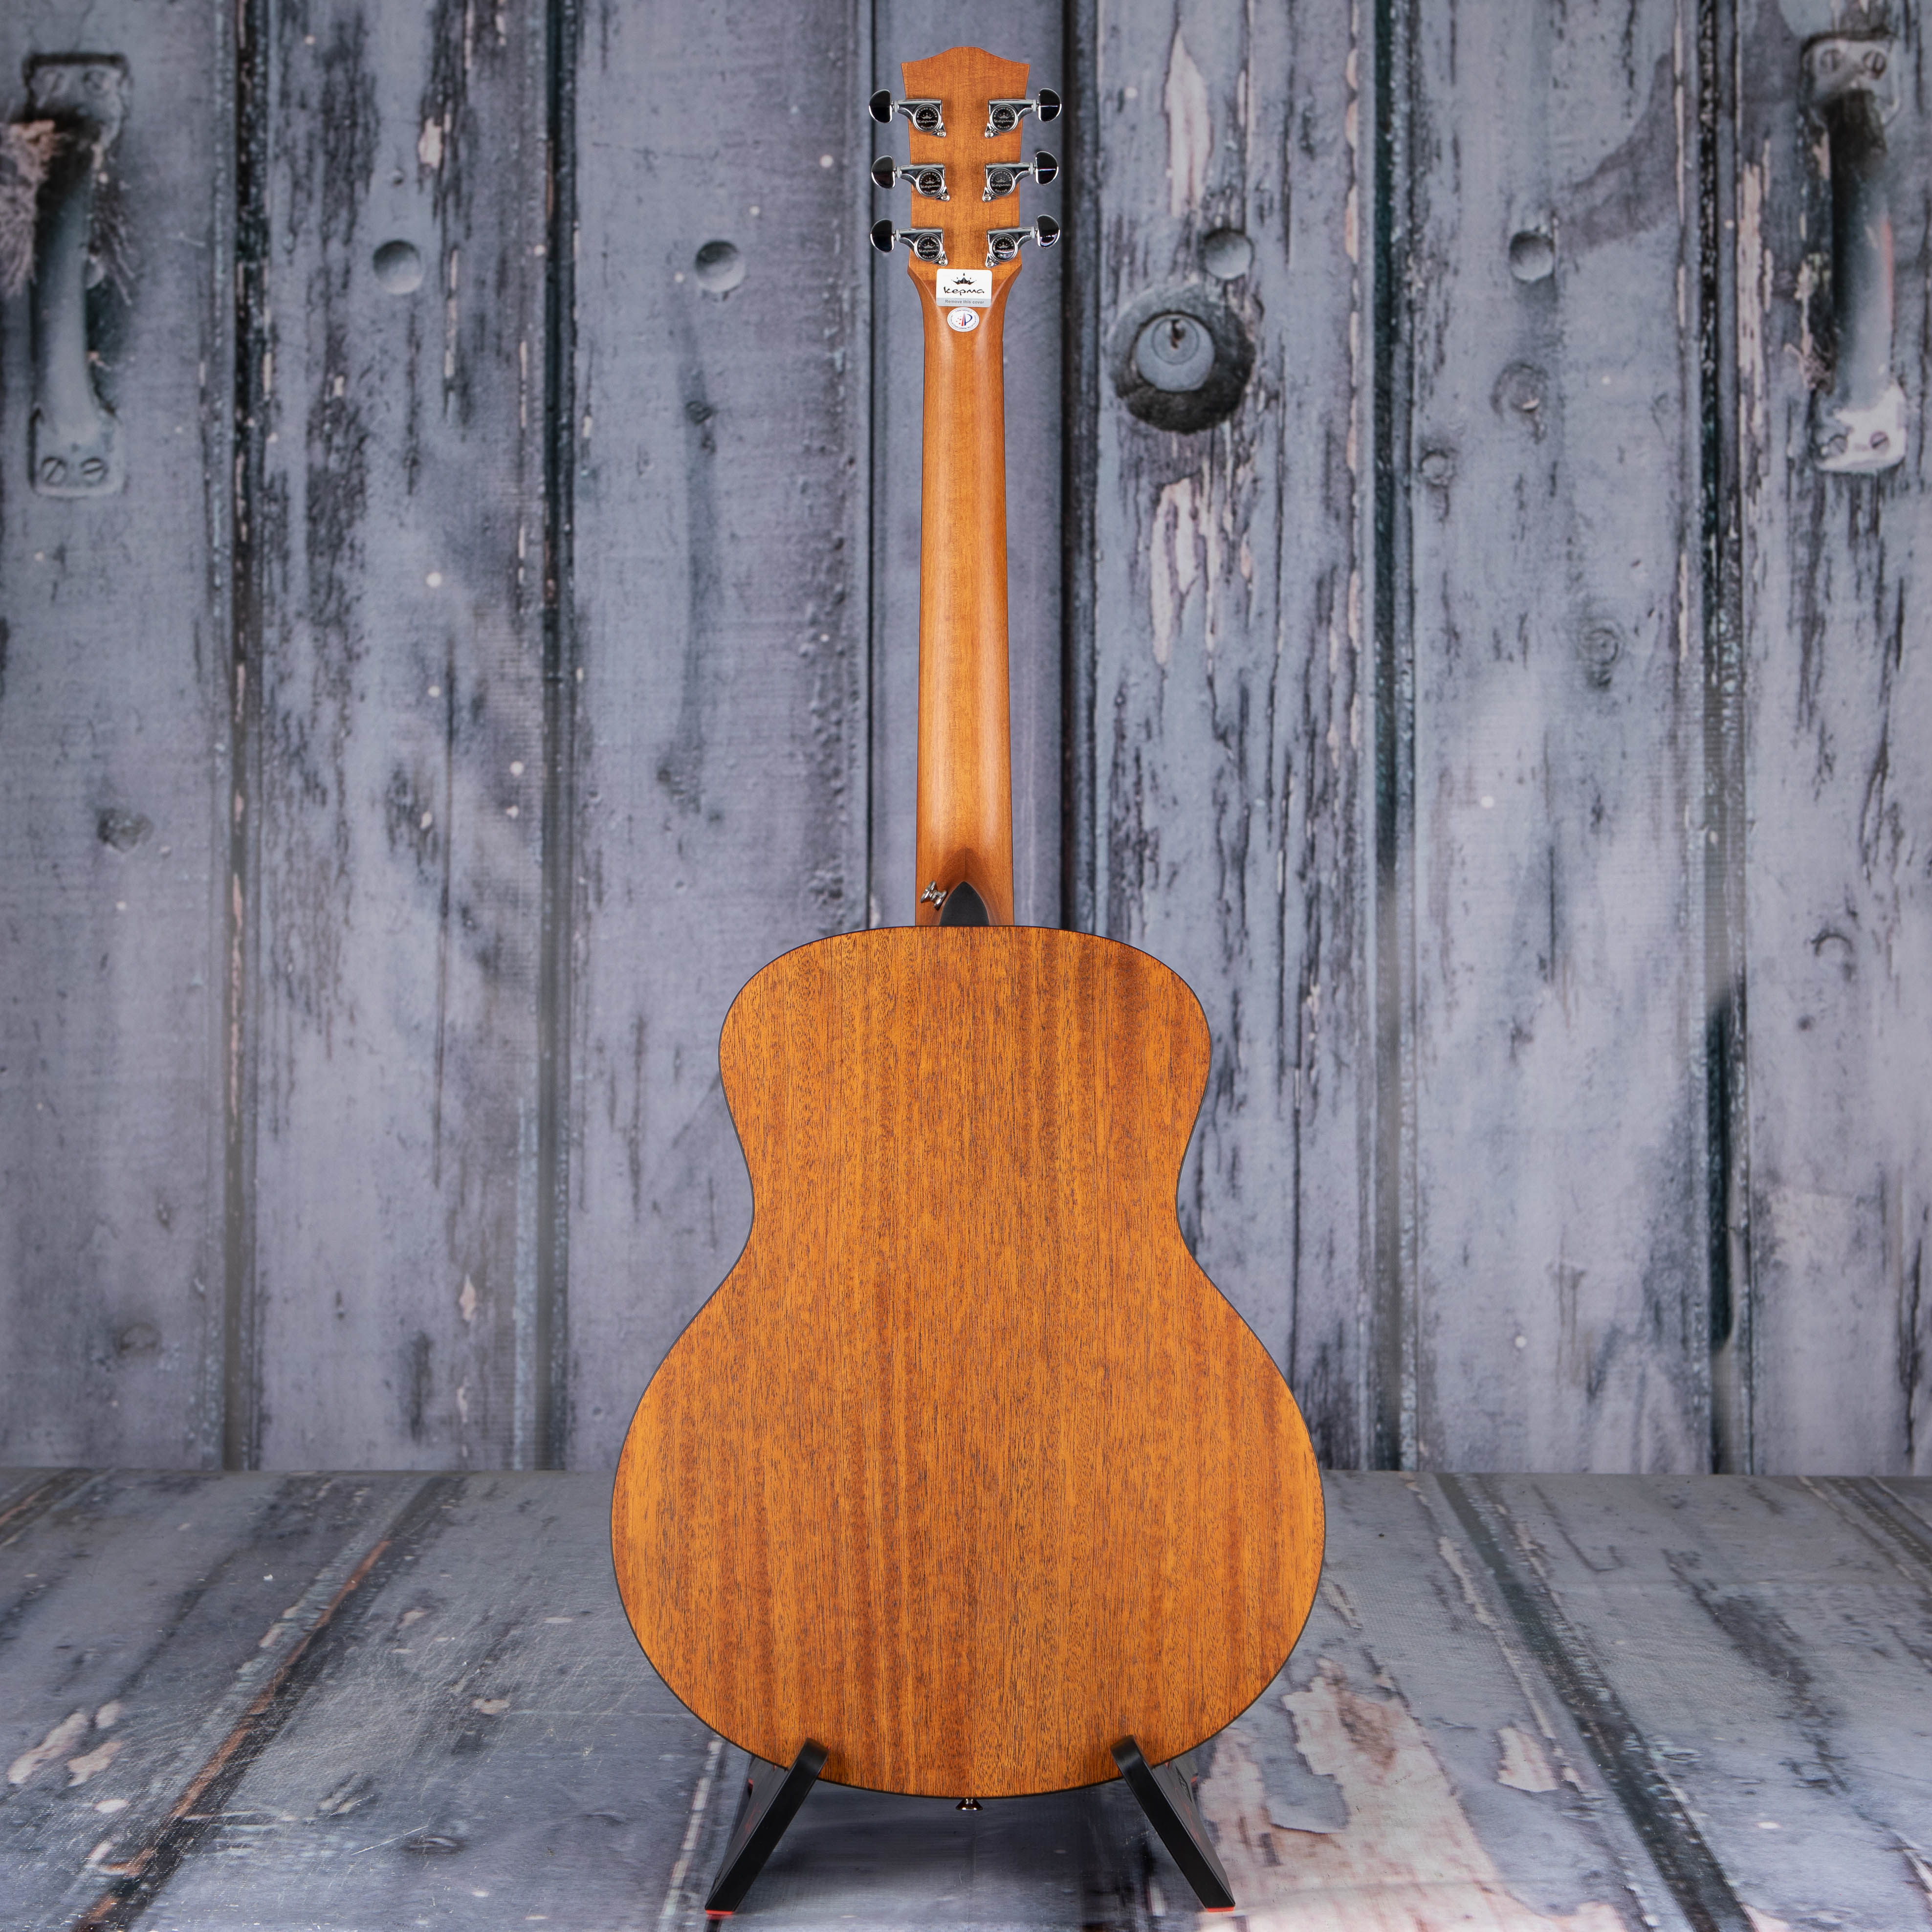 Kepma K3 Series M3-130 Mini 36" Model Acoustic Guitar, Sunburst, back